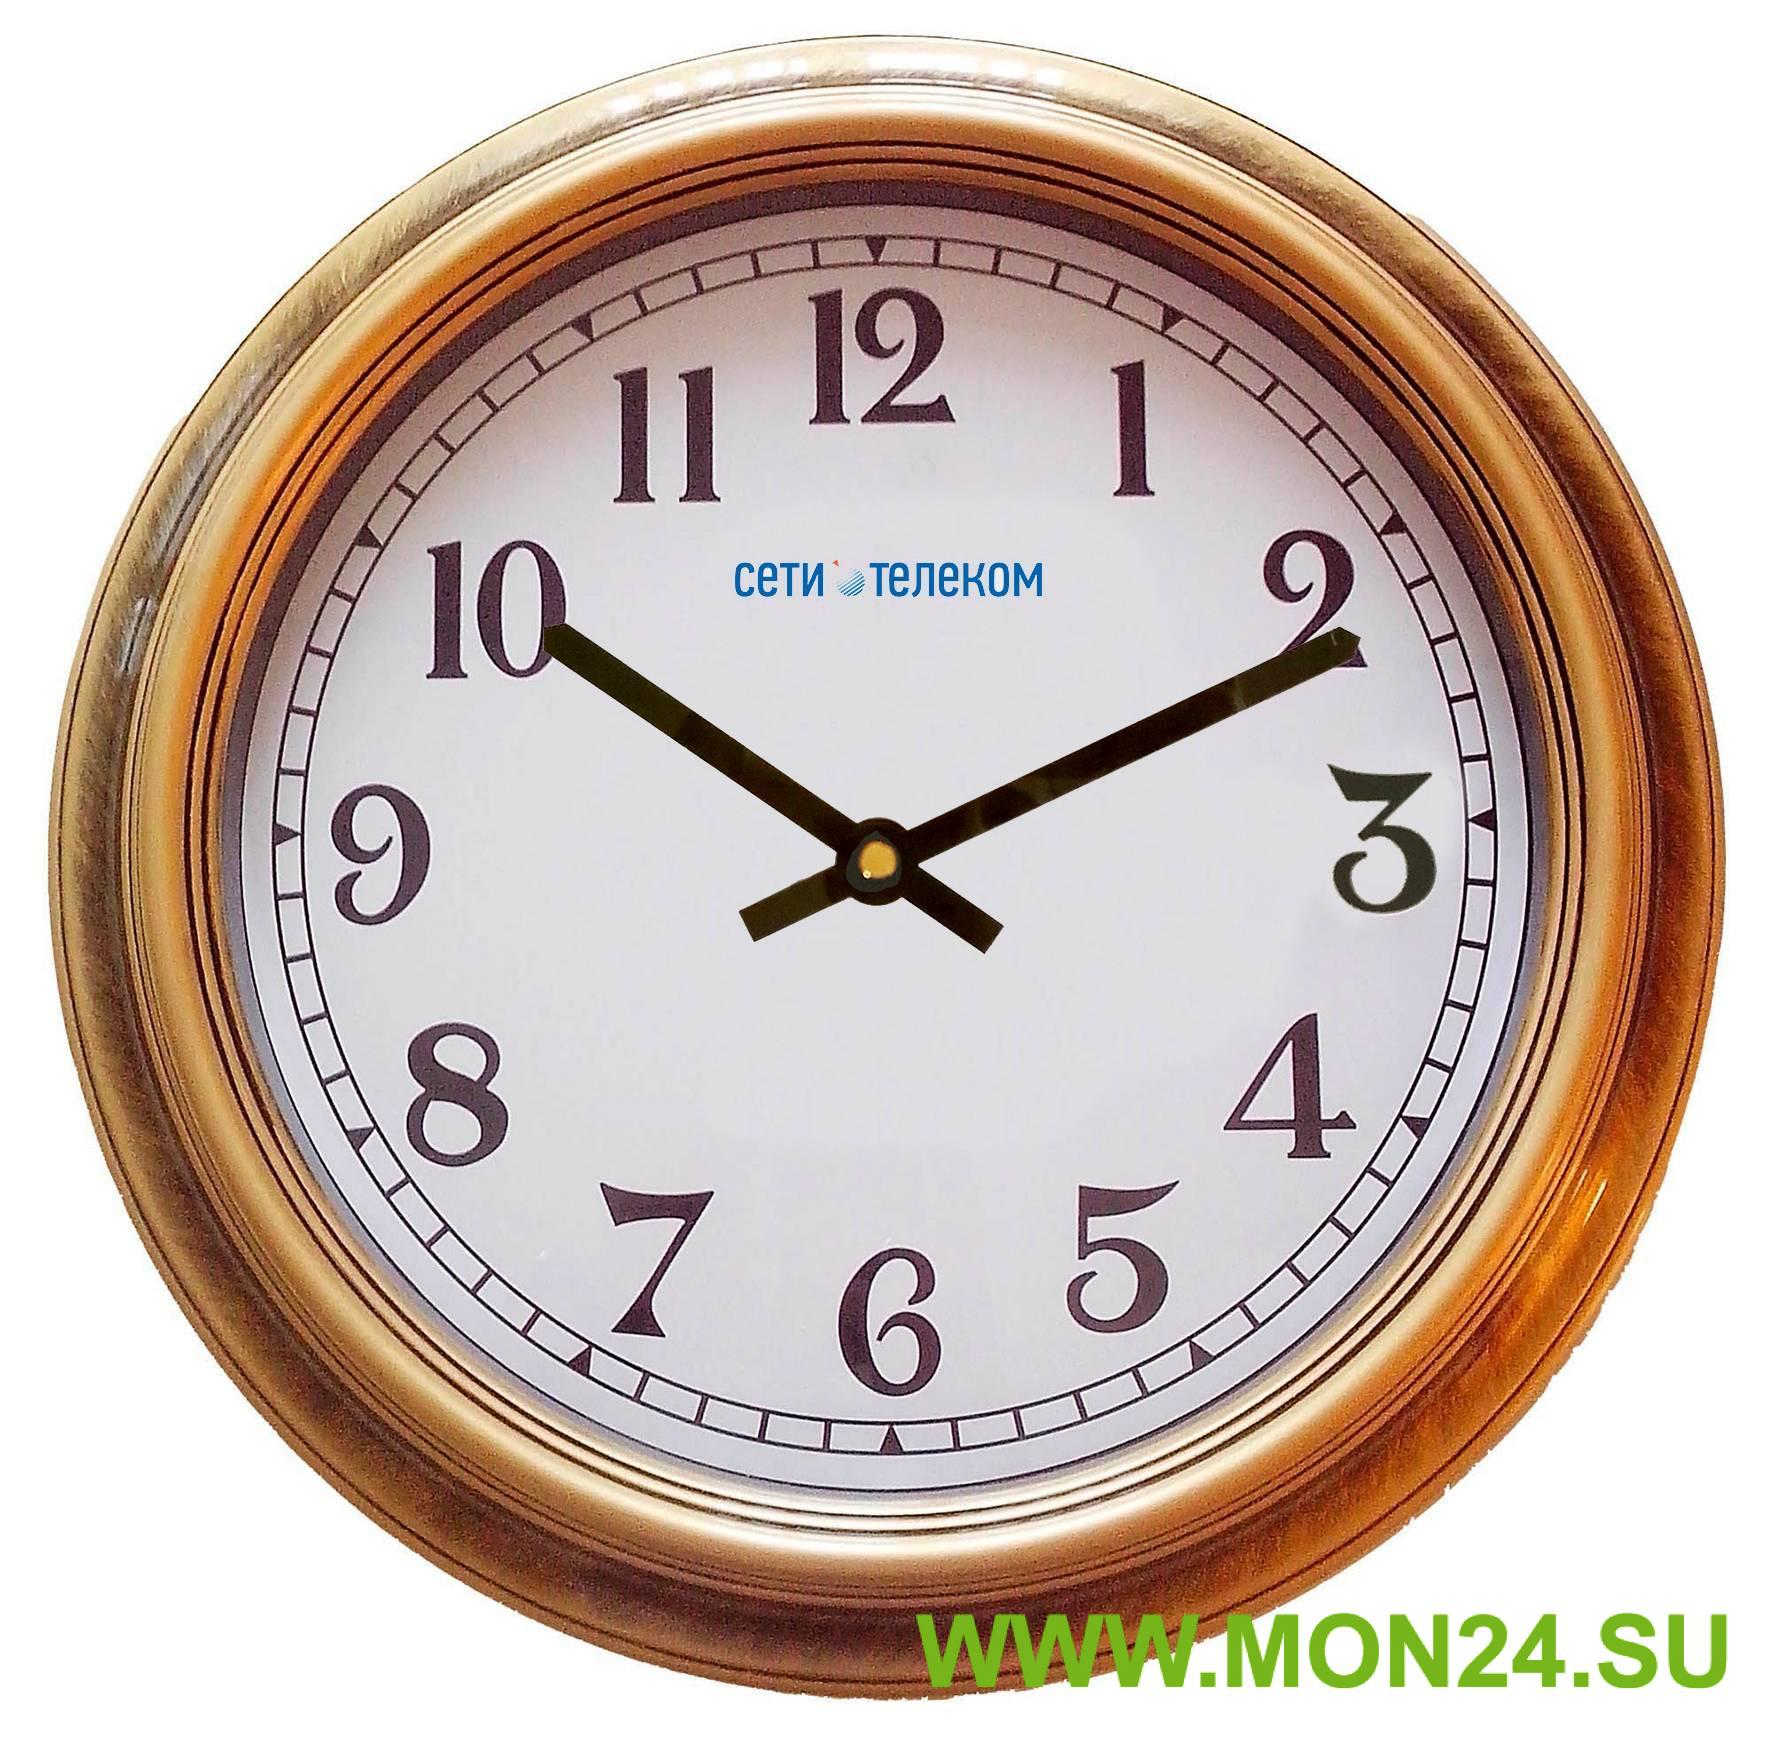 ВЧС-04 (ВЧ-04), диаметр 350 мм: Вторичные стрелочные часы